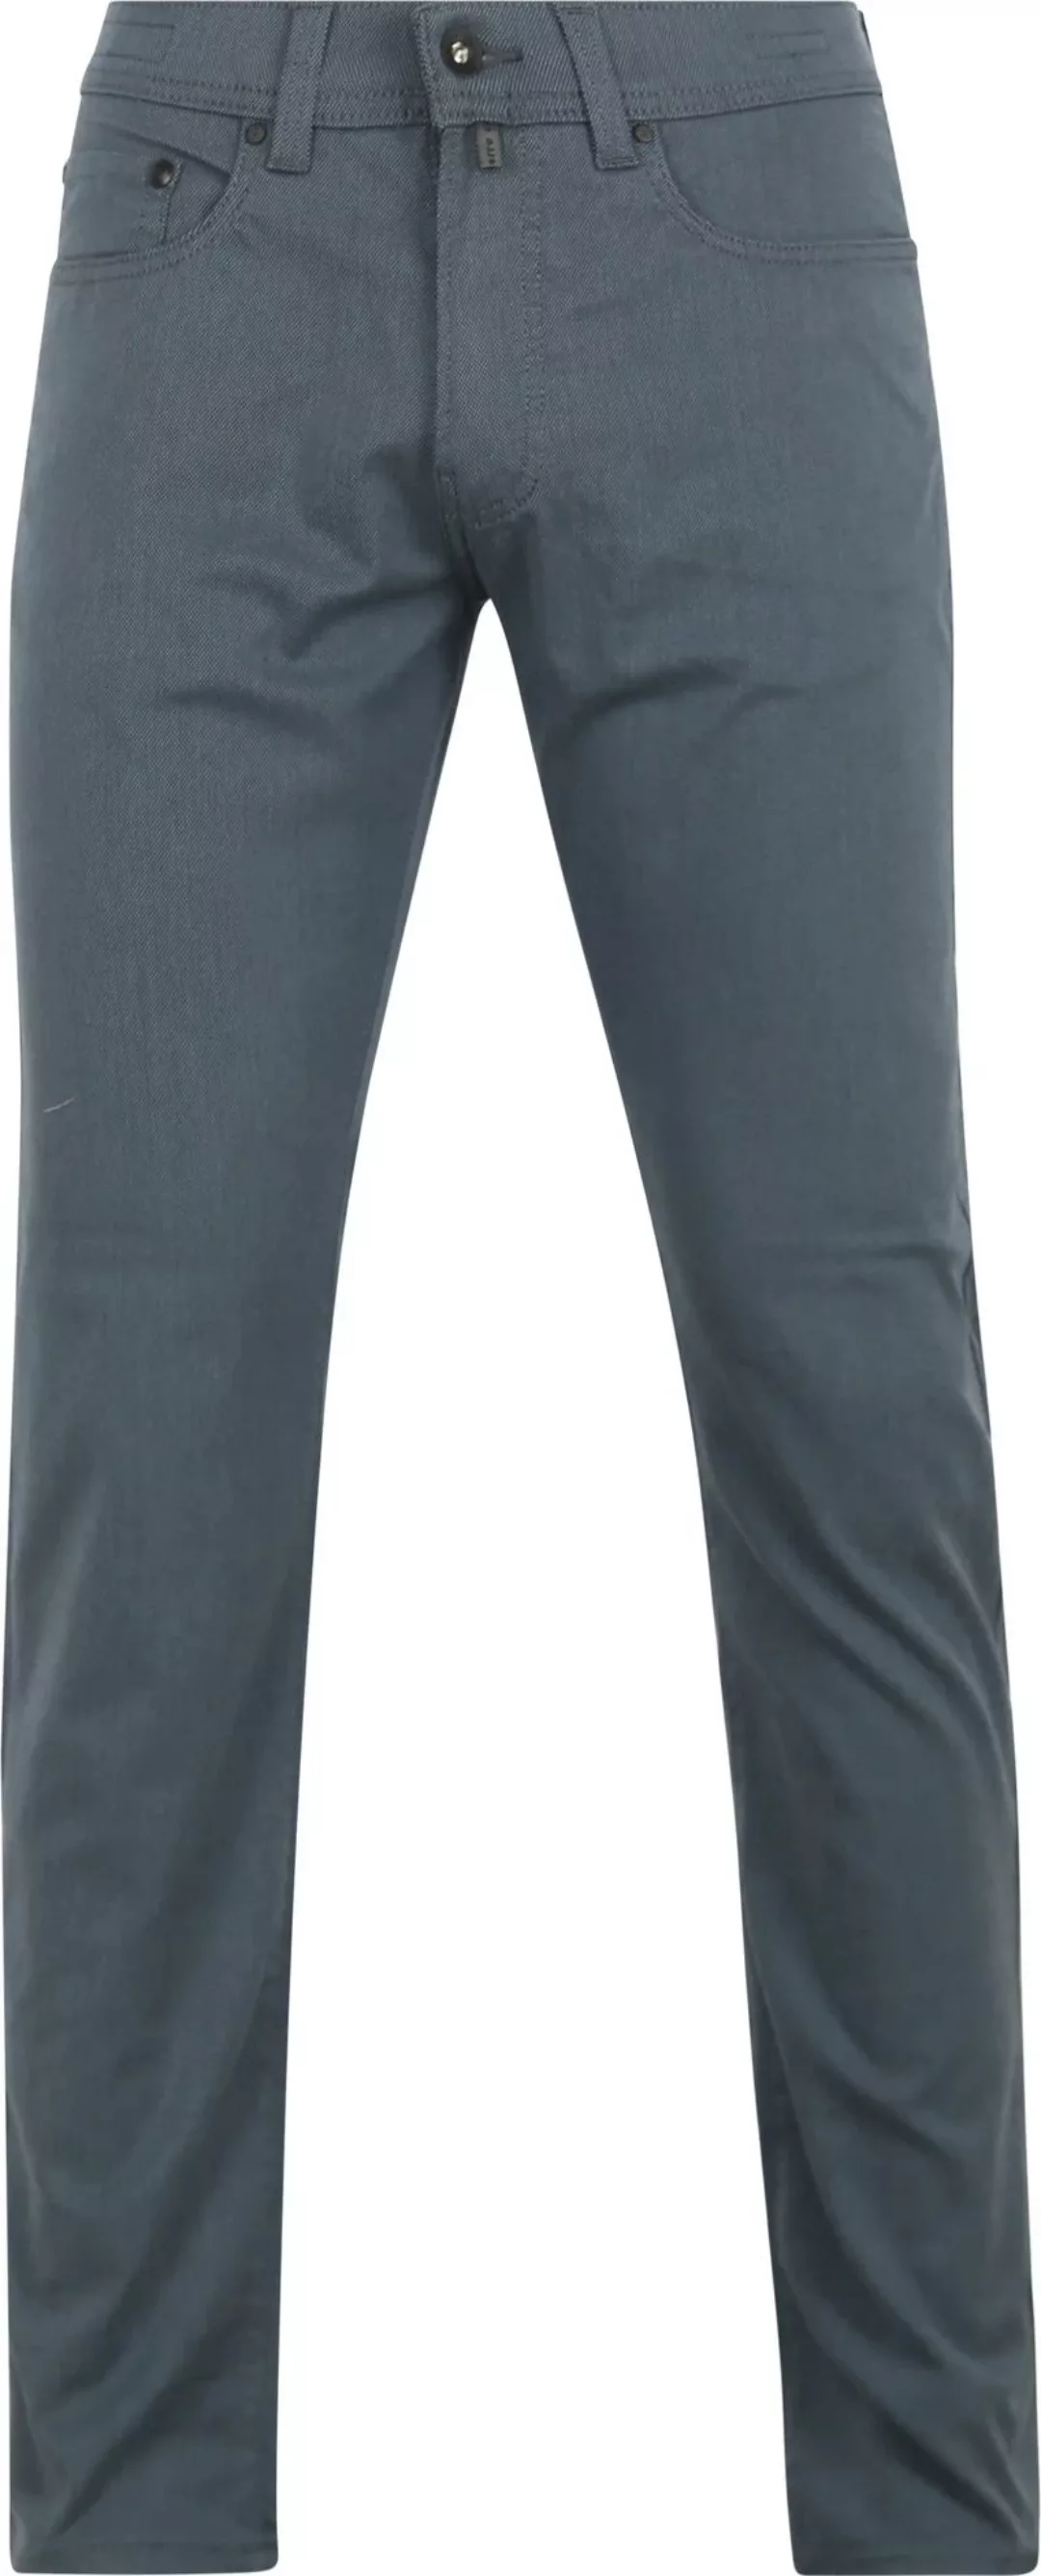 Pierre Cardin Trousers Lyon Tapered Ocean Blau - Größe W 36 - L 34 günstig online kaufen